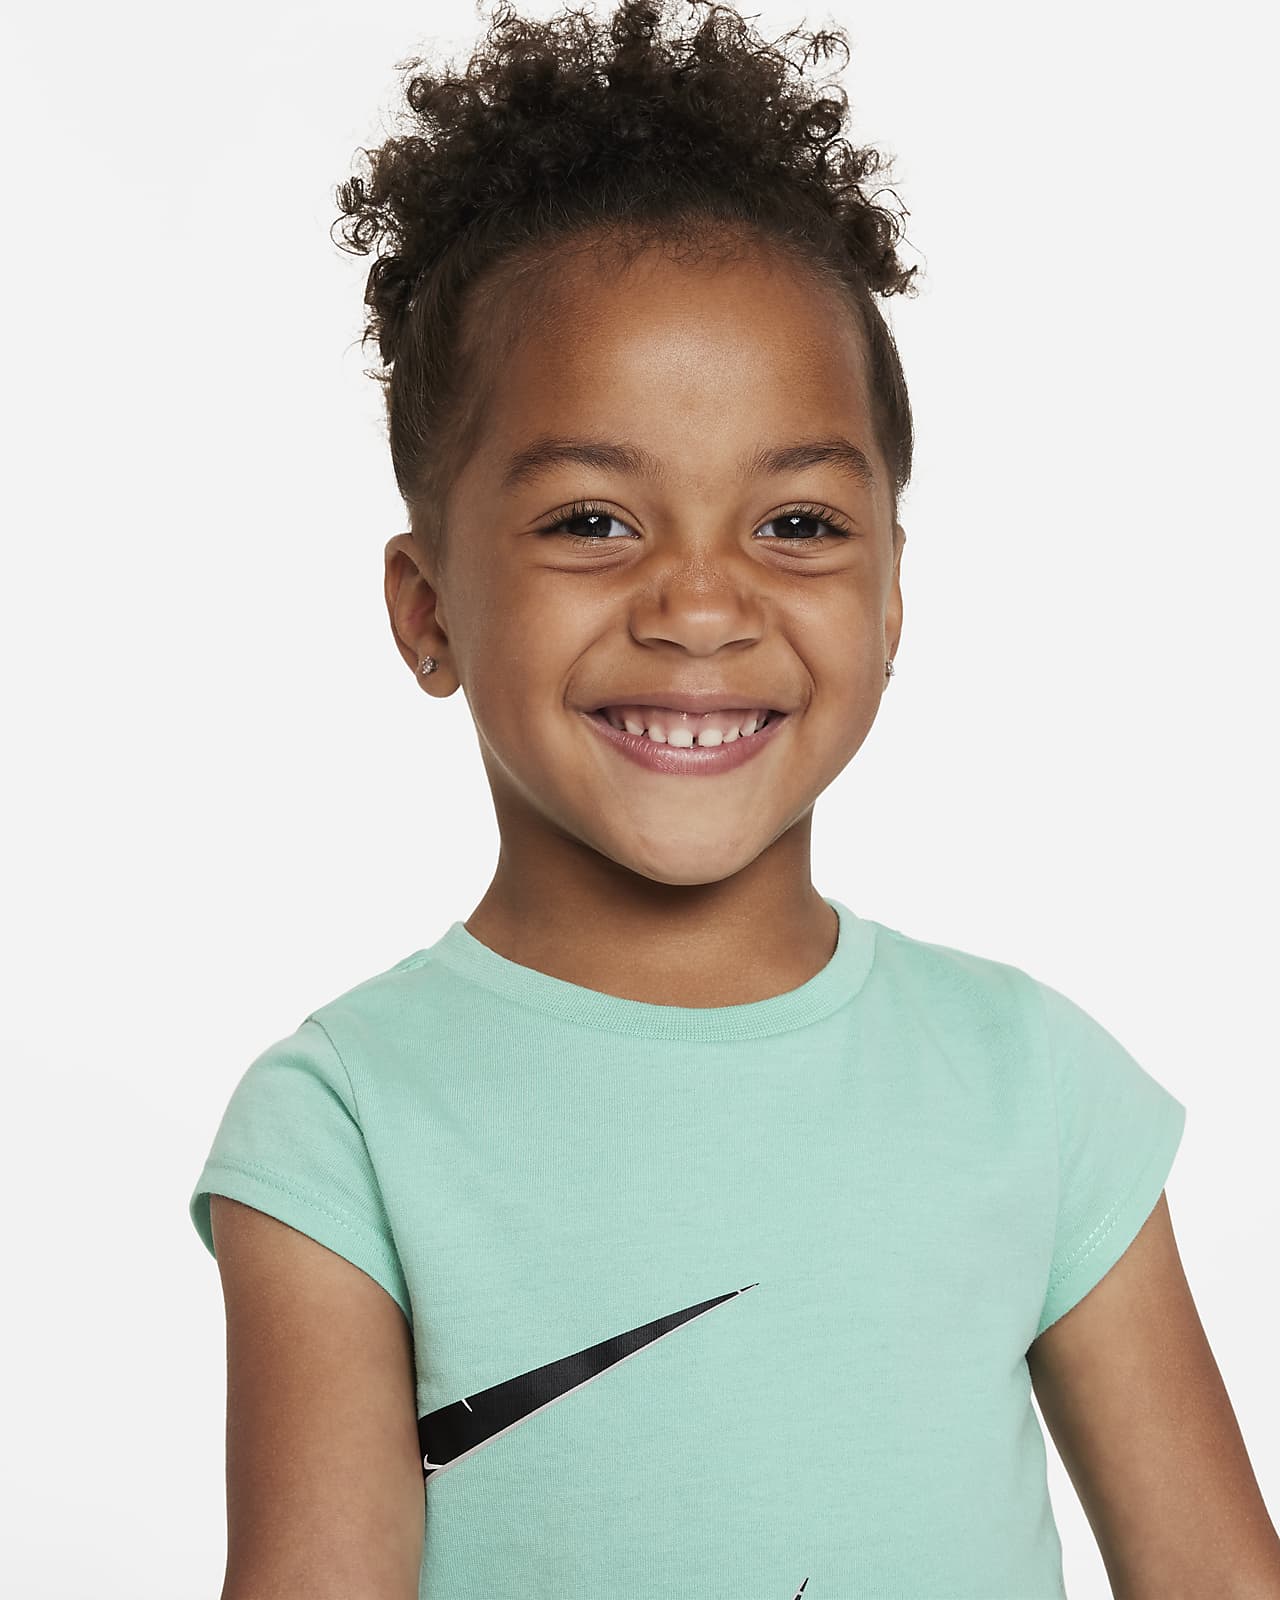 Nike Girls' Swooshfetti Leggings - Little Kid